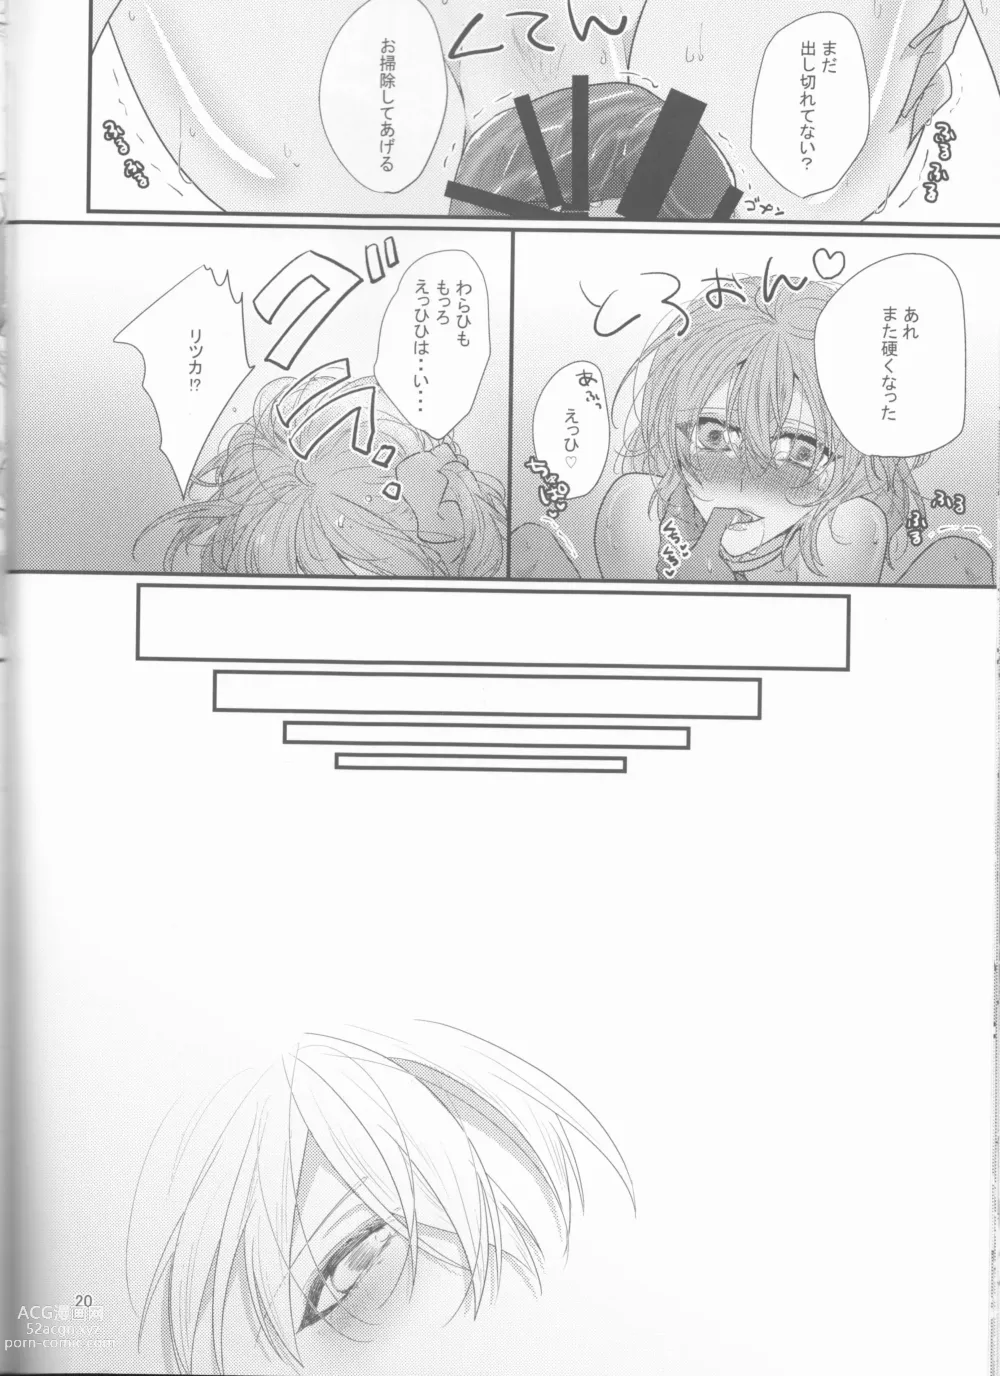 Page 20 of doujinshi Suiai